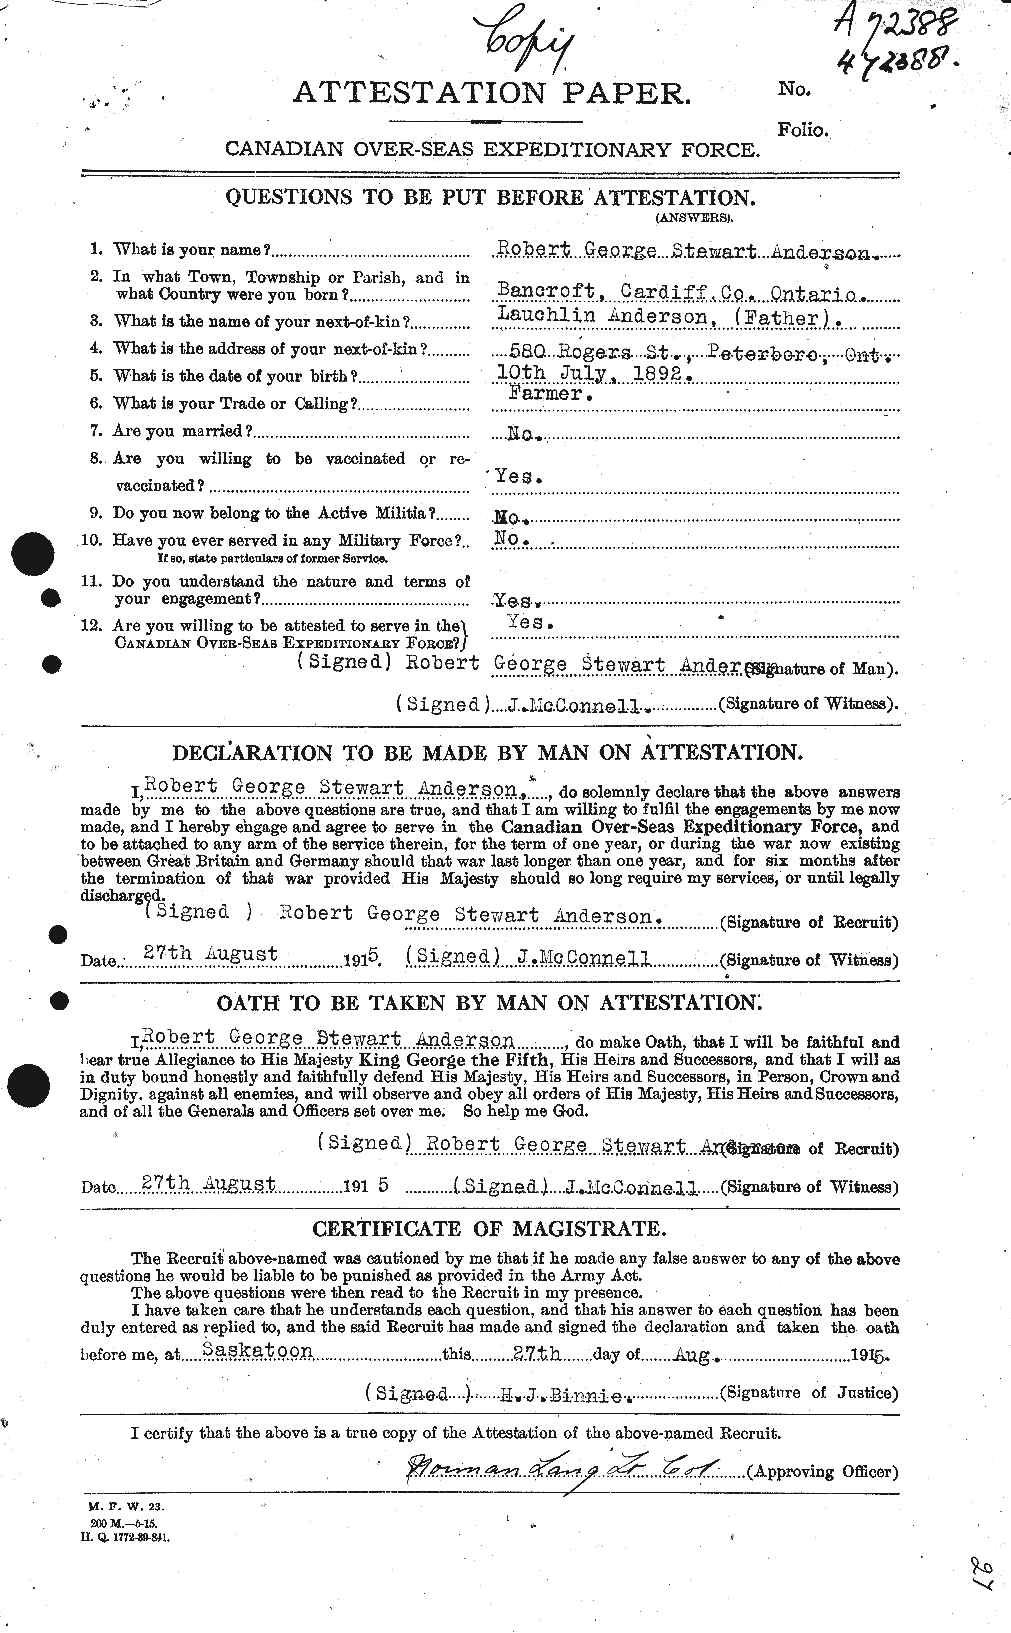 Dossiers du Personnel de la Première Guerre mondiale - CEC 207253a